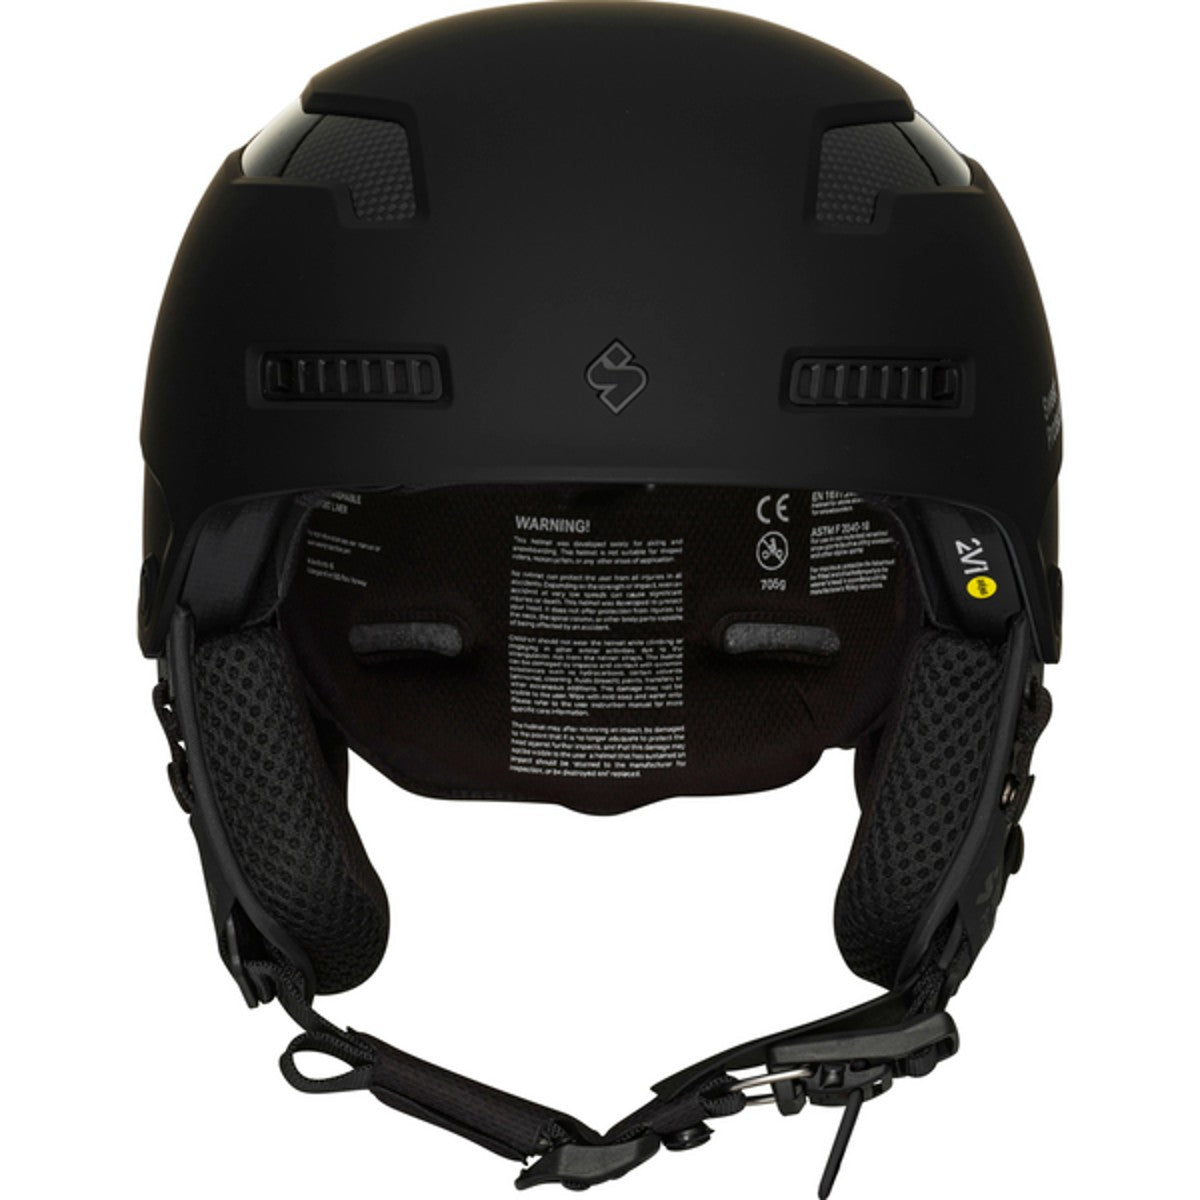 Sweet Protection - Men's Trooper 2Vi Mips Helmet - Dirt Black